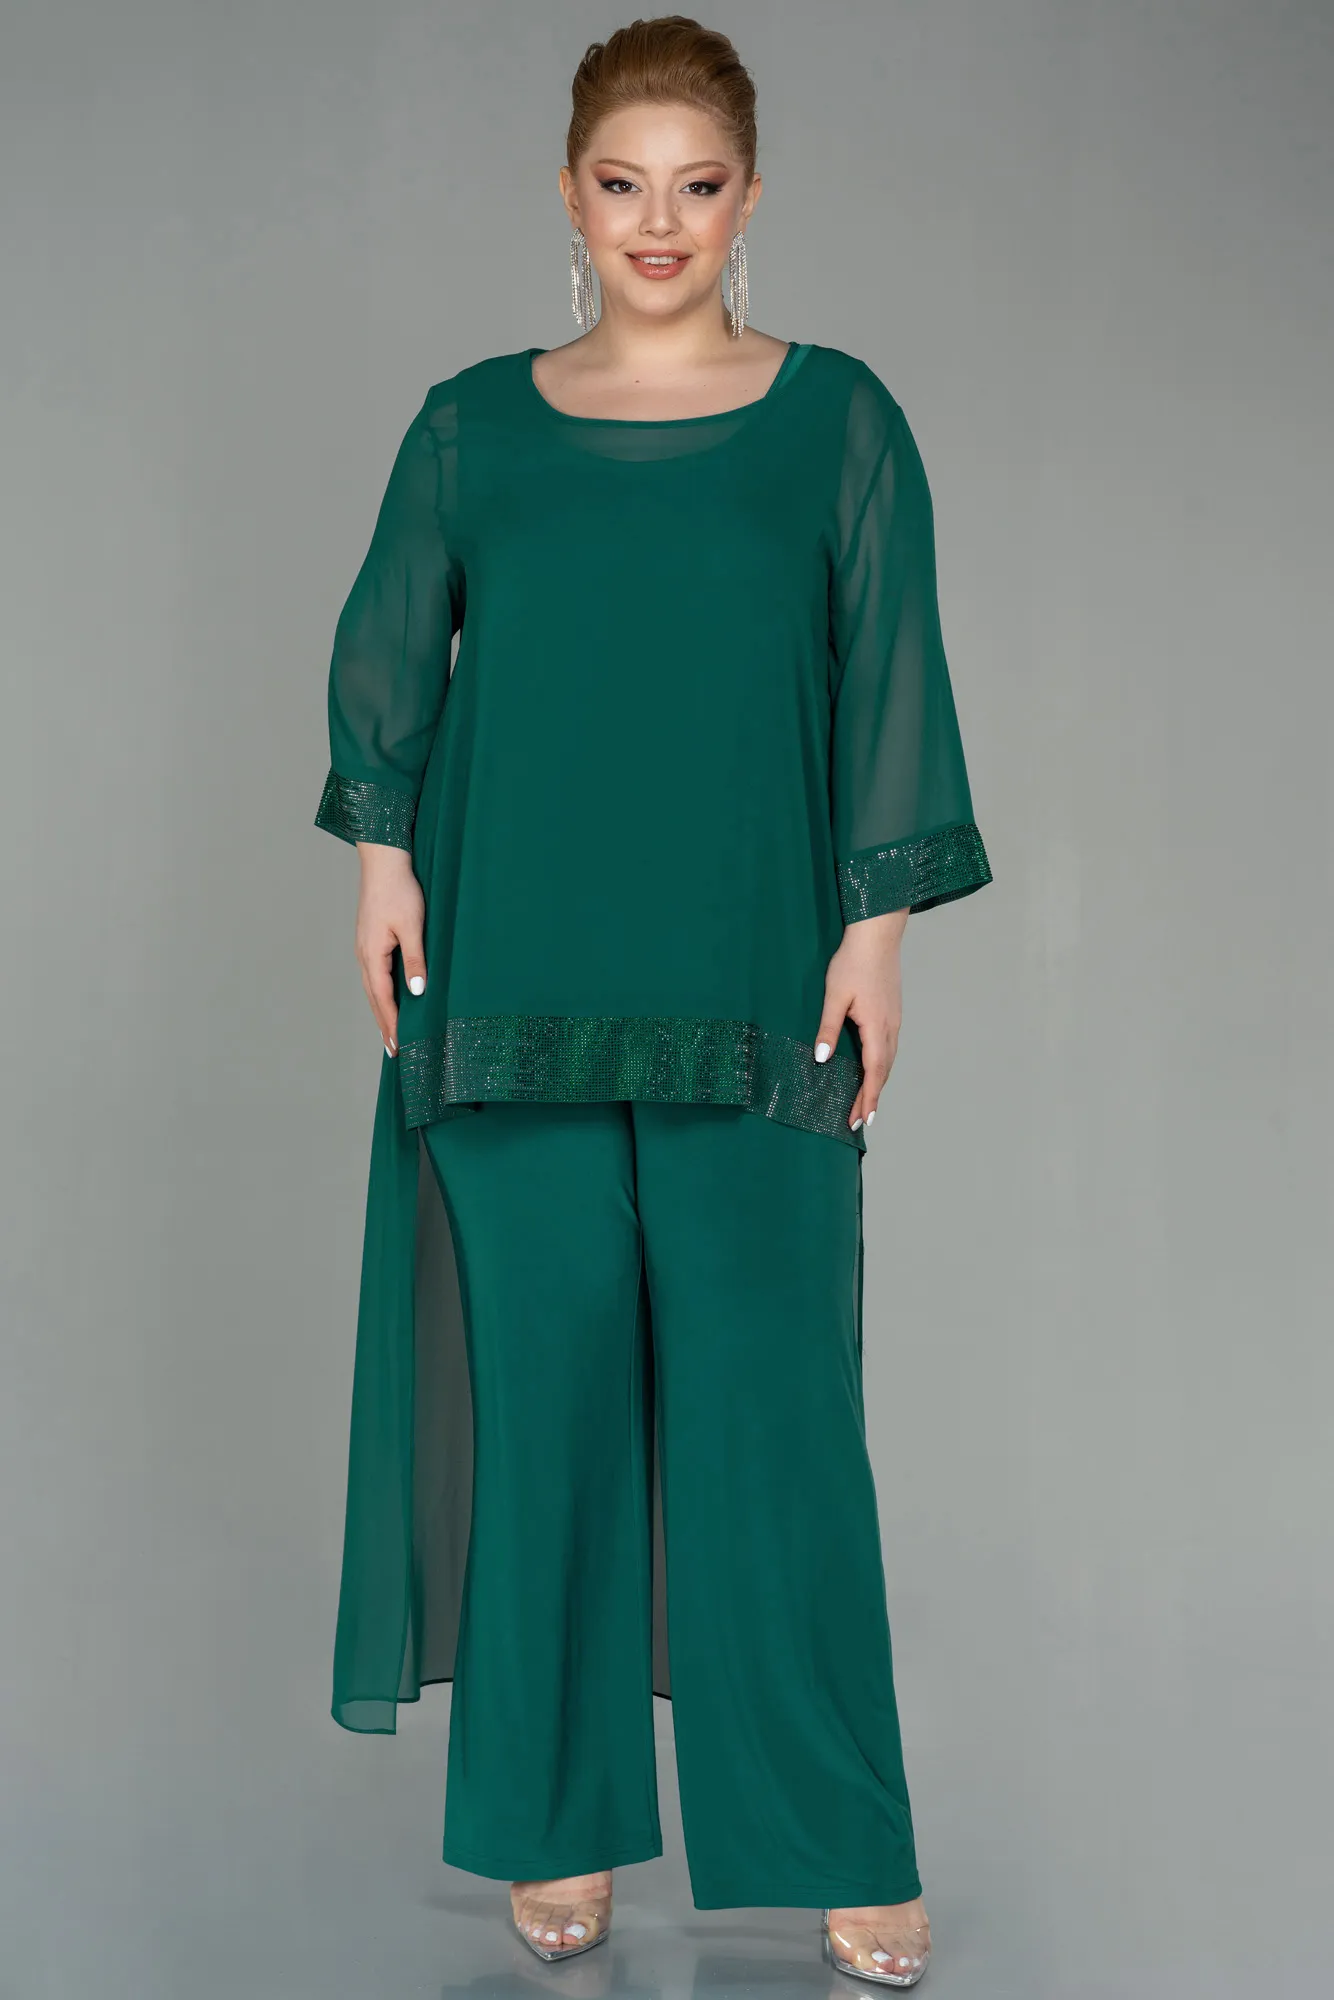 Emerald Green-Long Chiffon Evening Dress ABT083